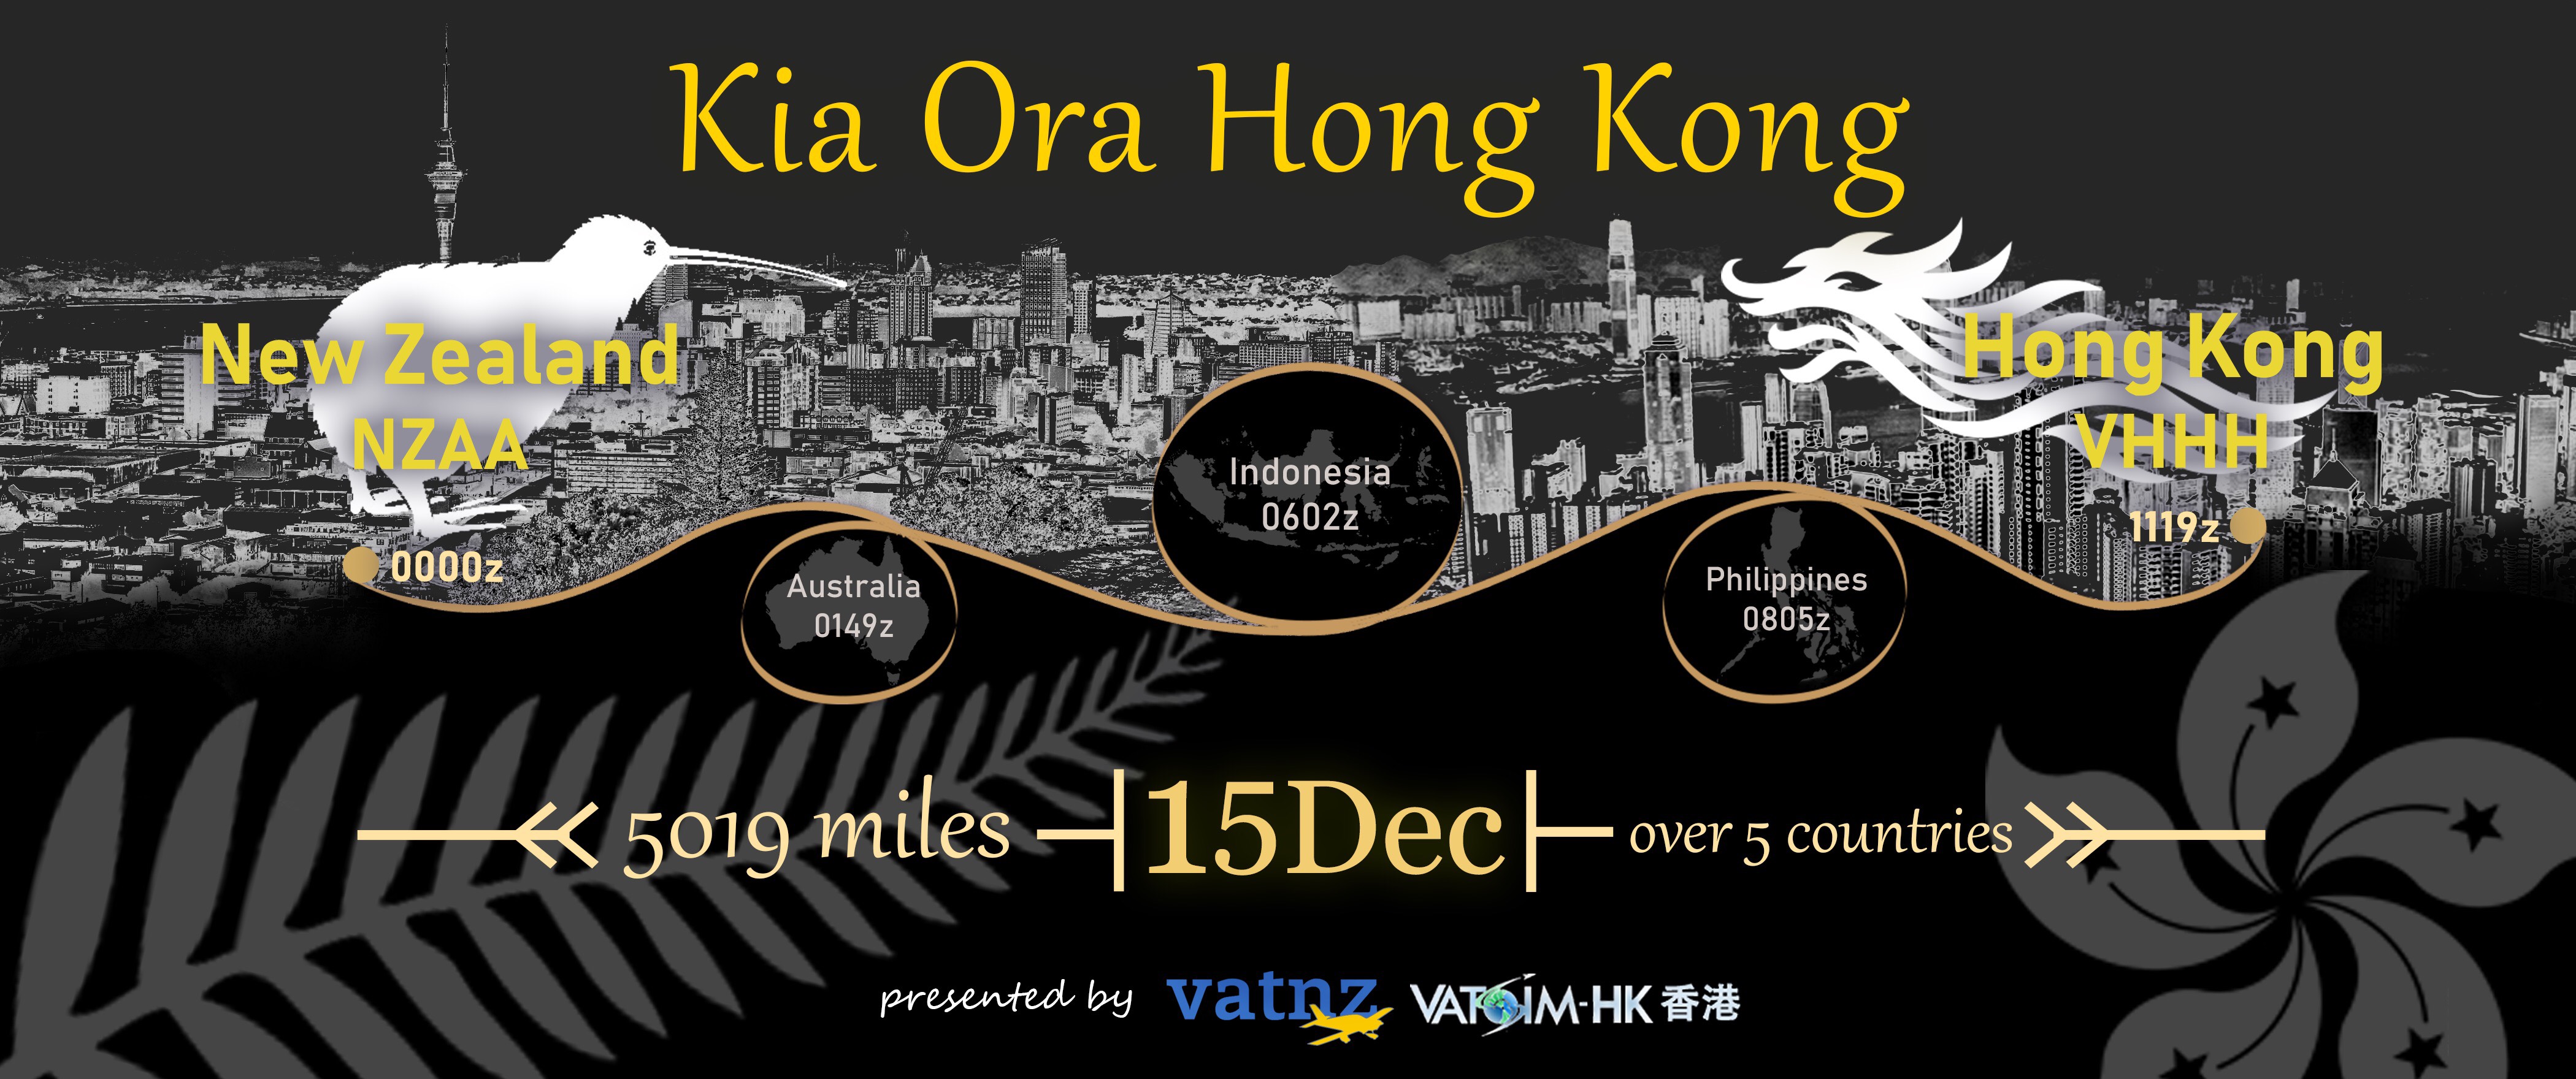 Kia Ora Hong Kong